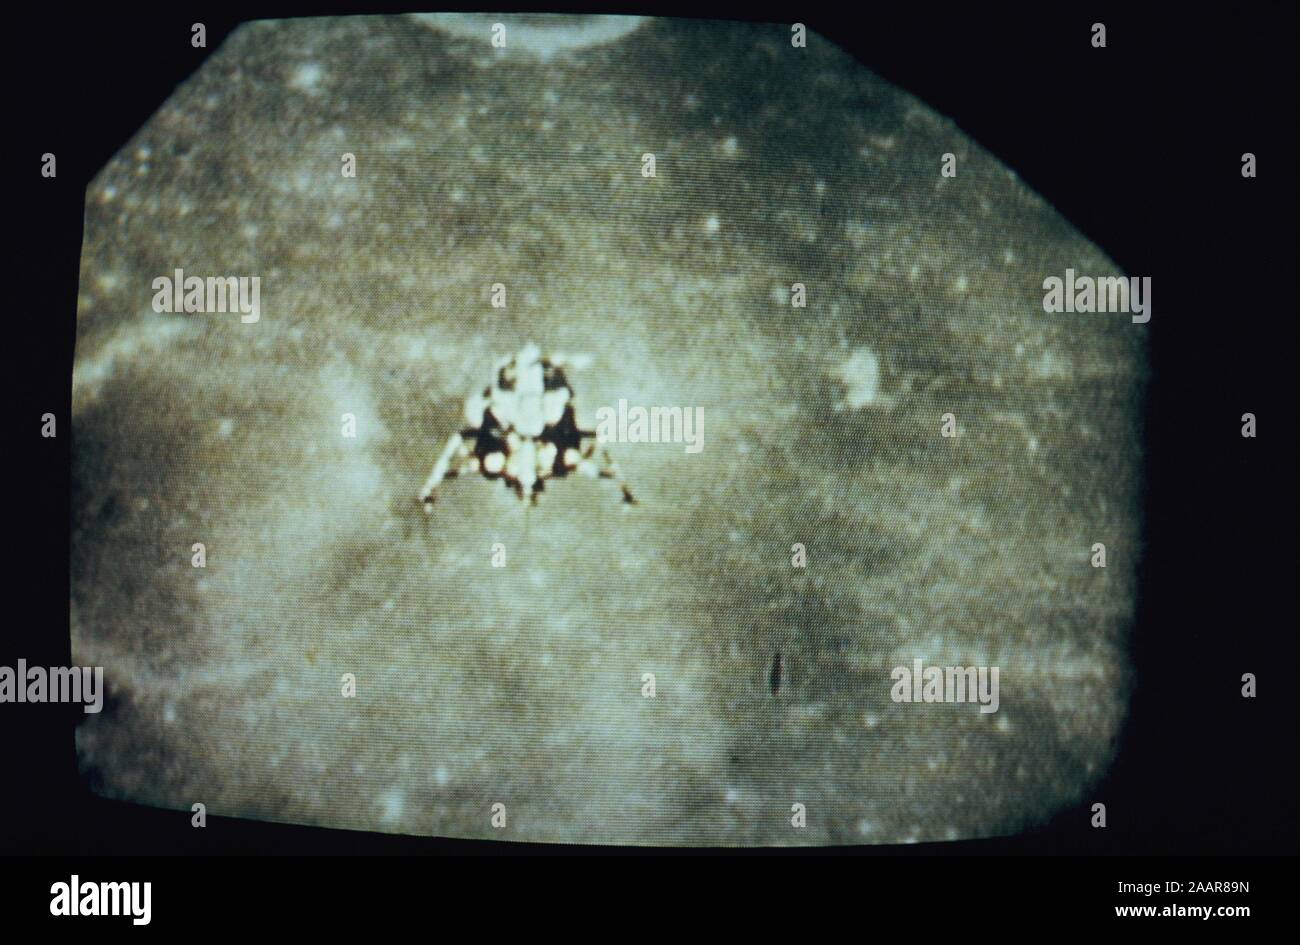 Teleclip - Apollo 11 Lunar Module Descent to Moon surface photo taken directly from TV screen circa 1969-1972, UK. Stock Photo